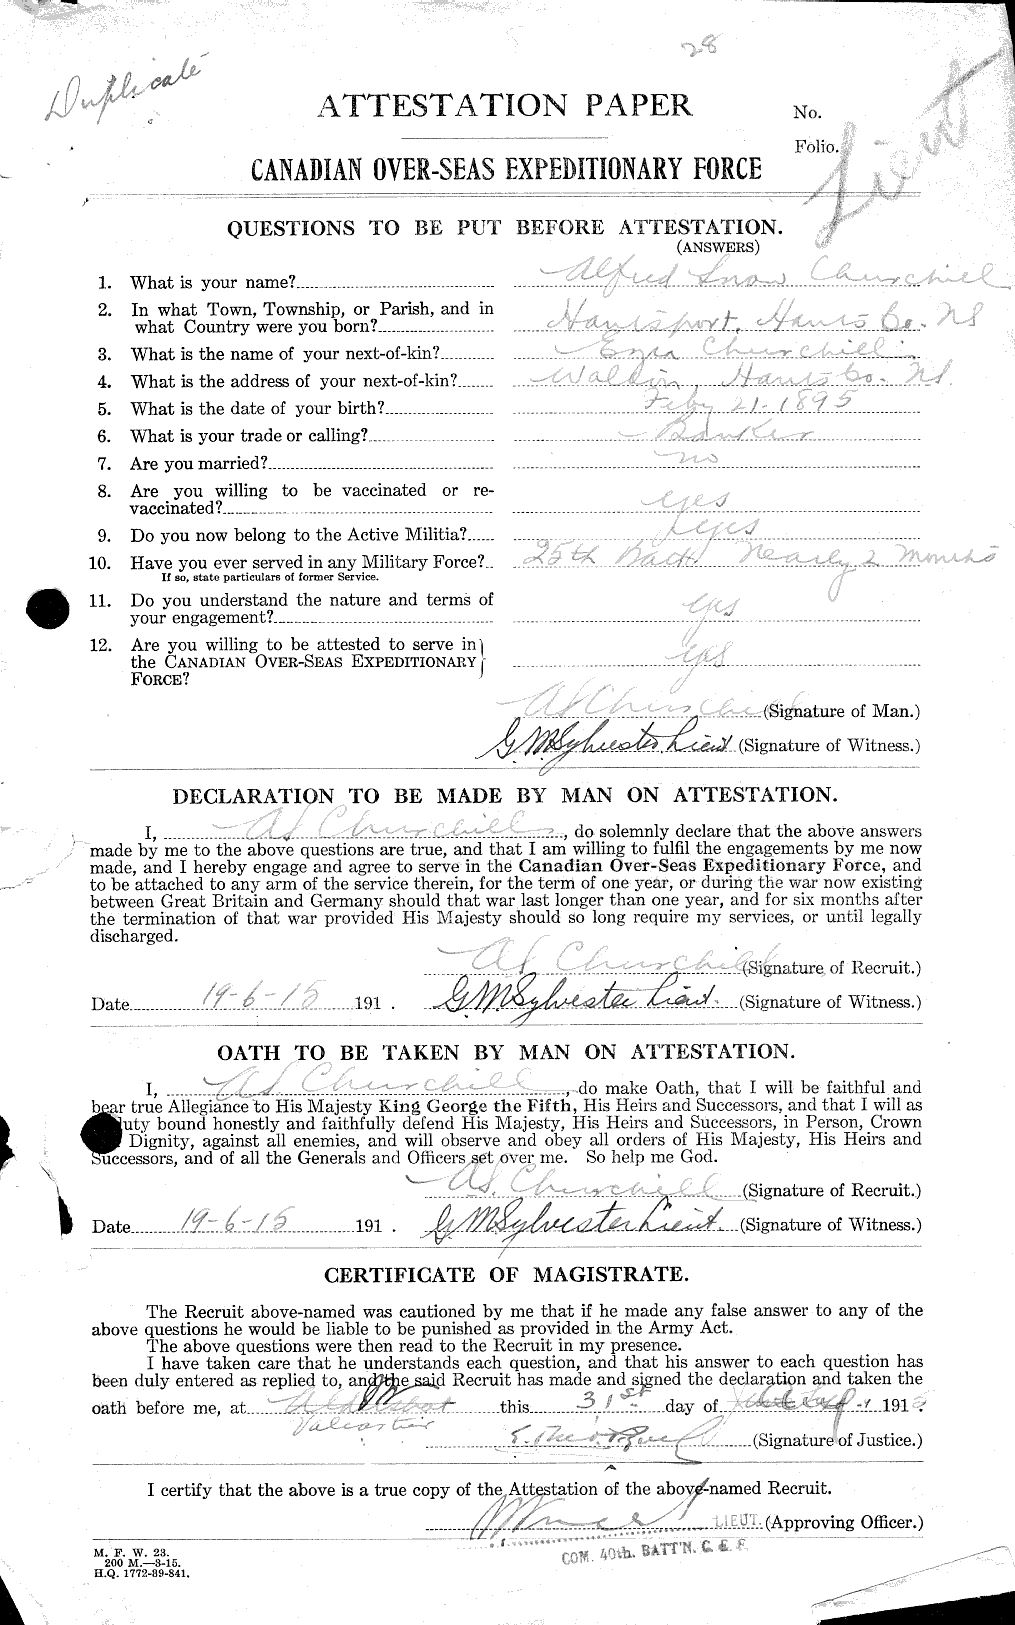 Dossiers du Personnel de la Première Guerre mondiale - CEC 022419a